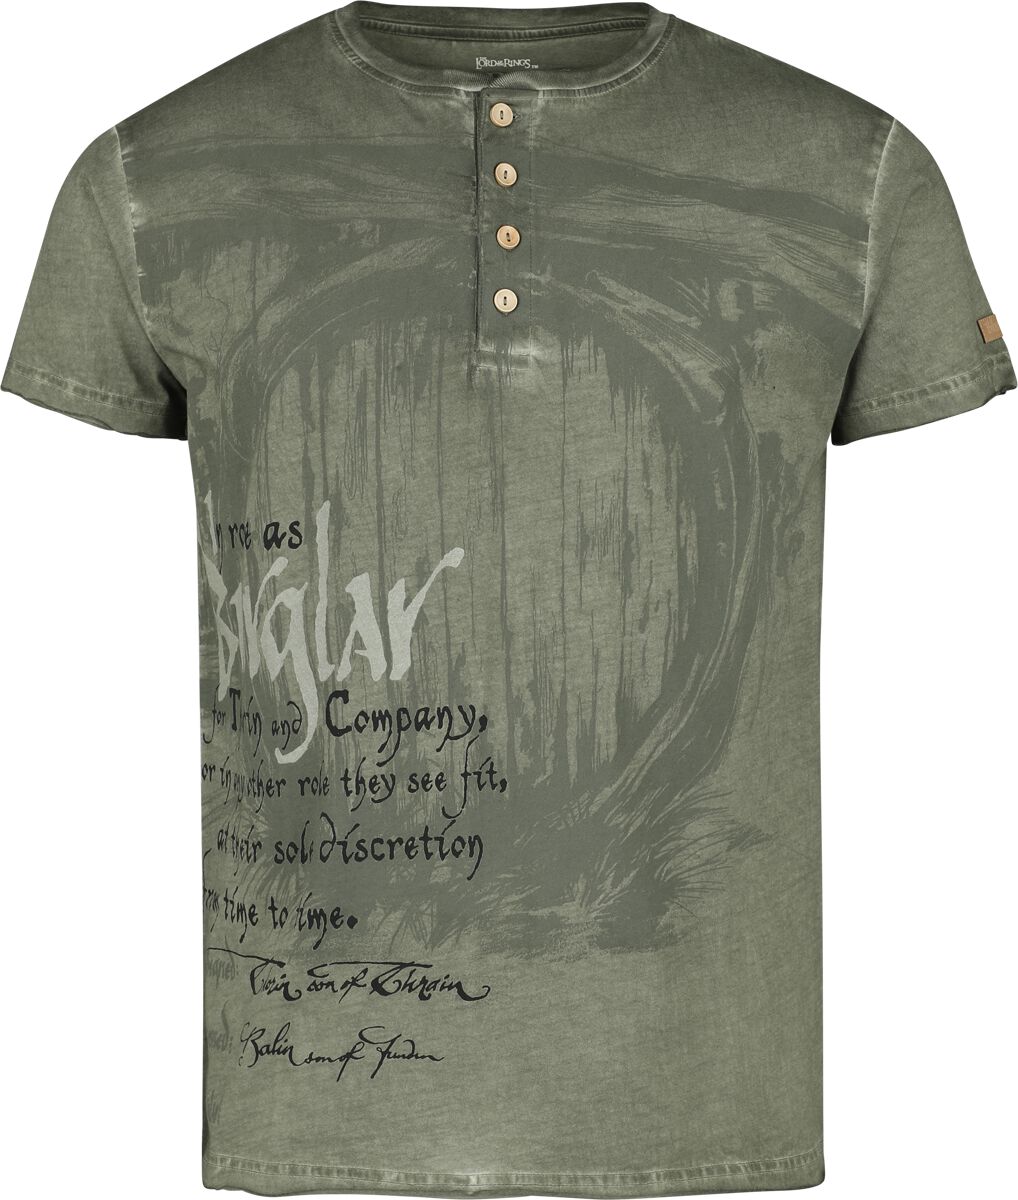 Der Hobbit T-Shirt - Burglar - S bis XXL - für Männer - Größe M - oliv  - EMP exklusives Merchandise!